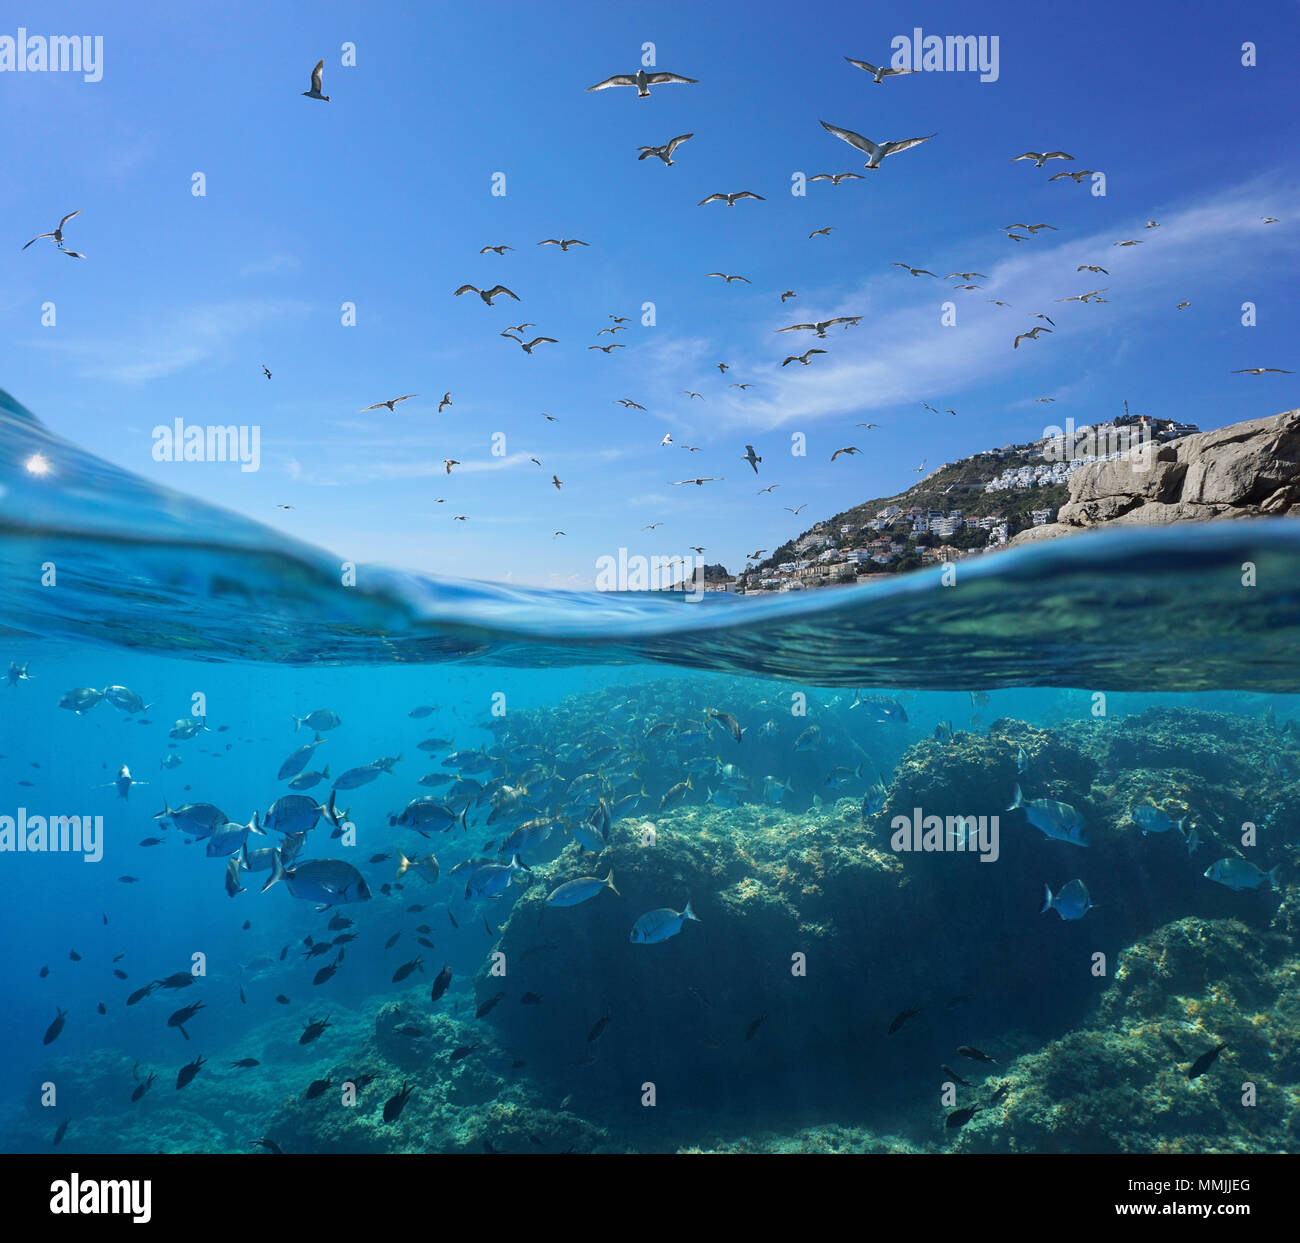 Seevögel fliegen in den Himmel und einen Schwarm von Fischen mit Felsen unter Wasser, geteilte Ansicht oberhalb und unterhalb der Wasseroberfläche, Mittelmeer, Spanien, Costa Brava Stockfoto